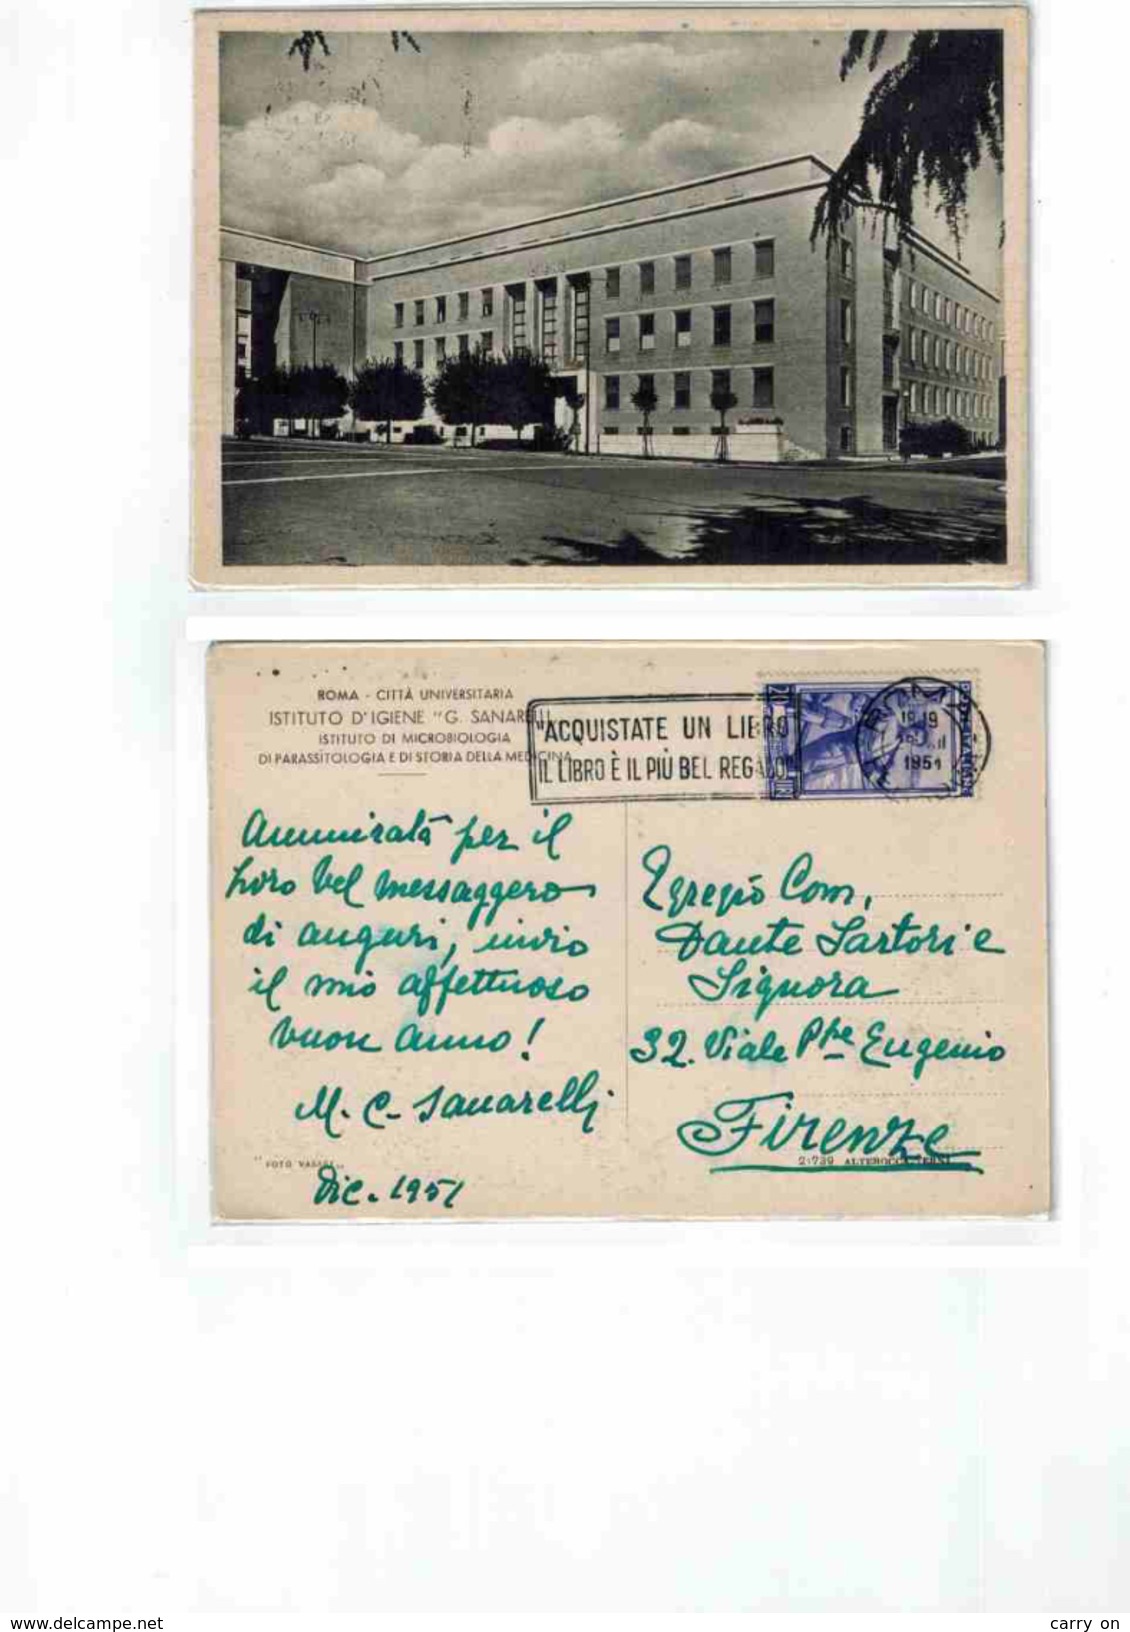 Cartolina Illustrata Della Città Universitaria 1951 - Educazione, Scuole E Università